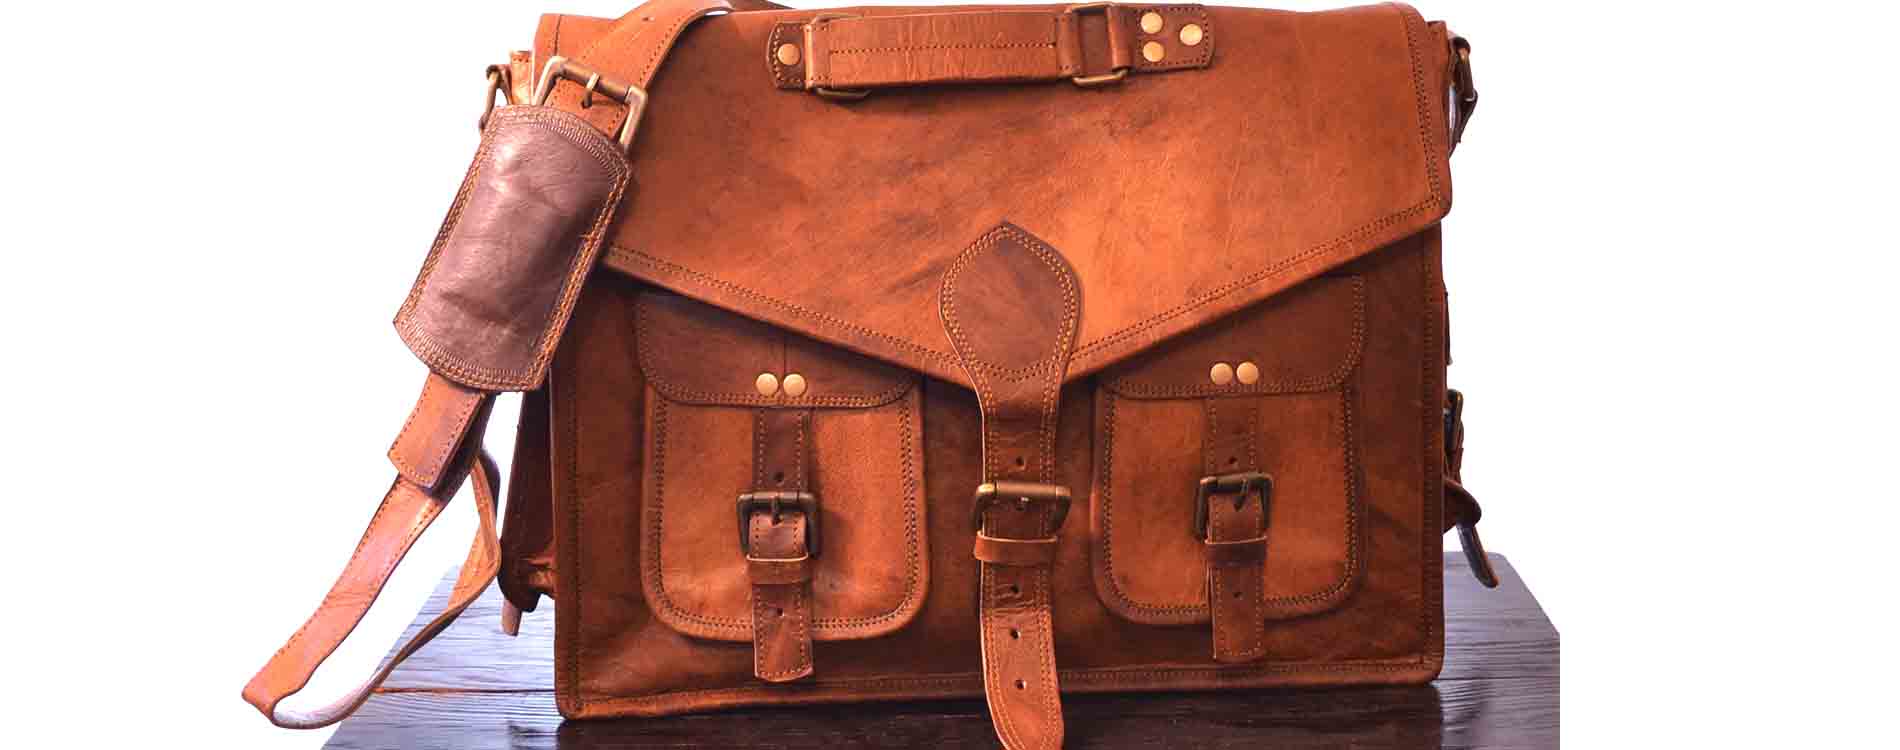 Rhinoland Genuine Leather Vintage Laptop Bag 16" Messenger Handmade Briefcase Satchel Bag Cross body Shoulder Bag